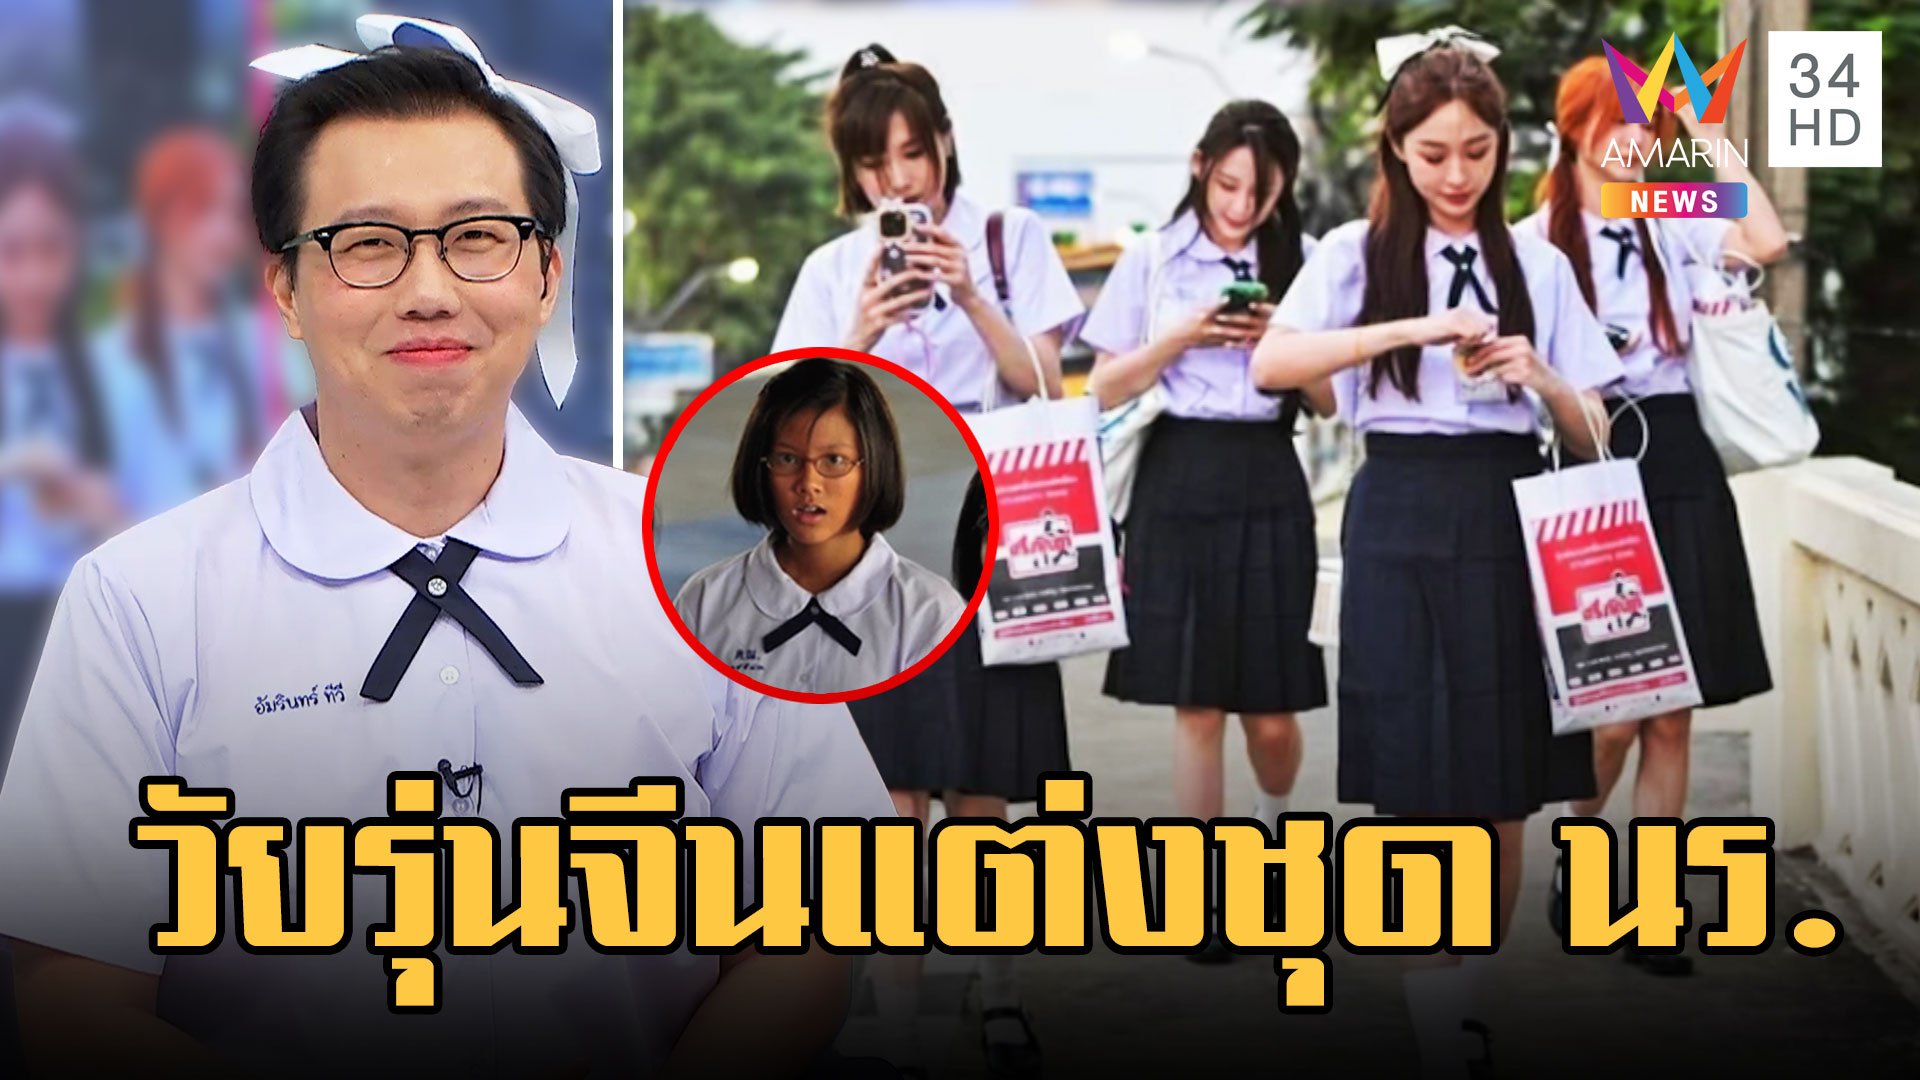 นทท.จีนตามกระแสซีรีส์แต่งชุดนักเรียนไทย  | ข่าวเที่ยงอมรินทร์ | 8 มี.ค. 66 | AMARIN TVHD34